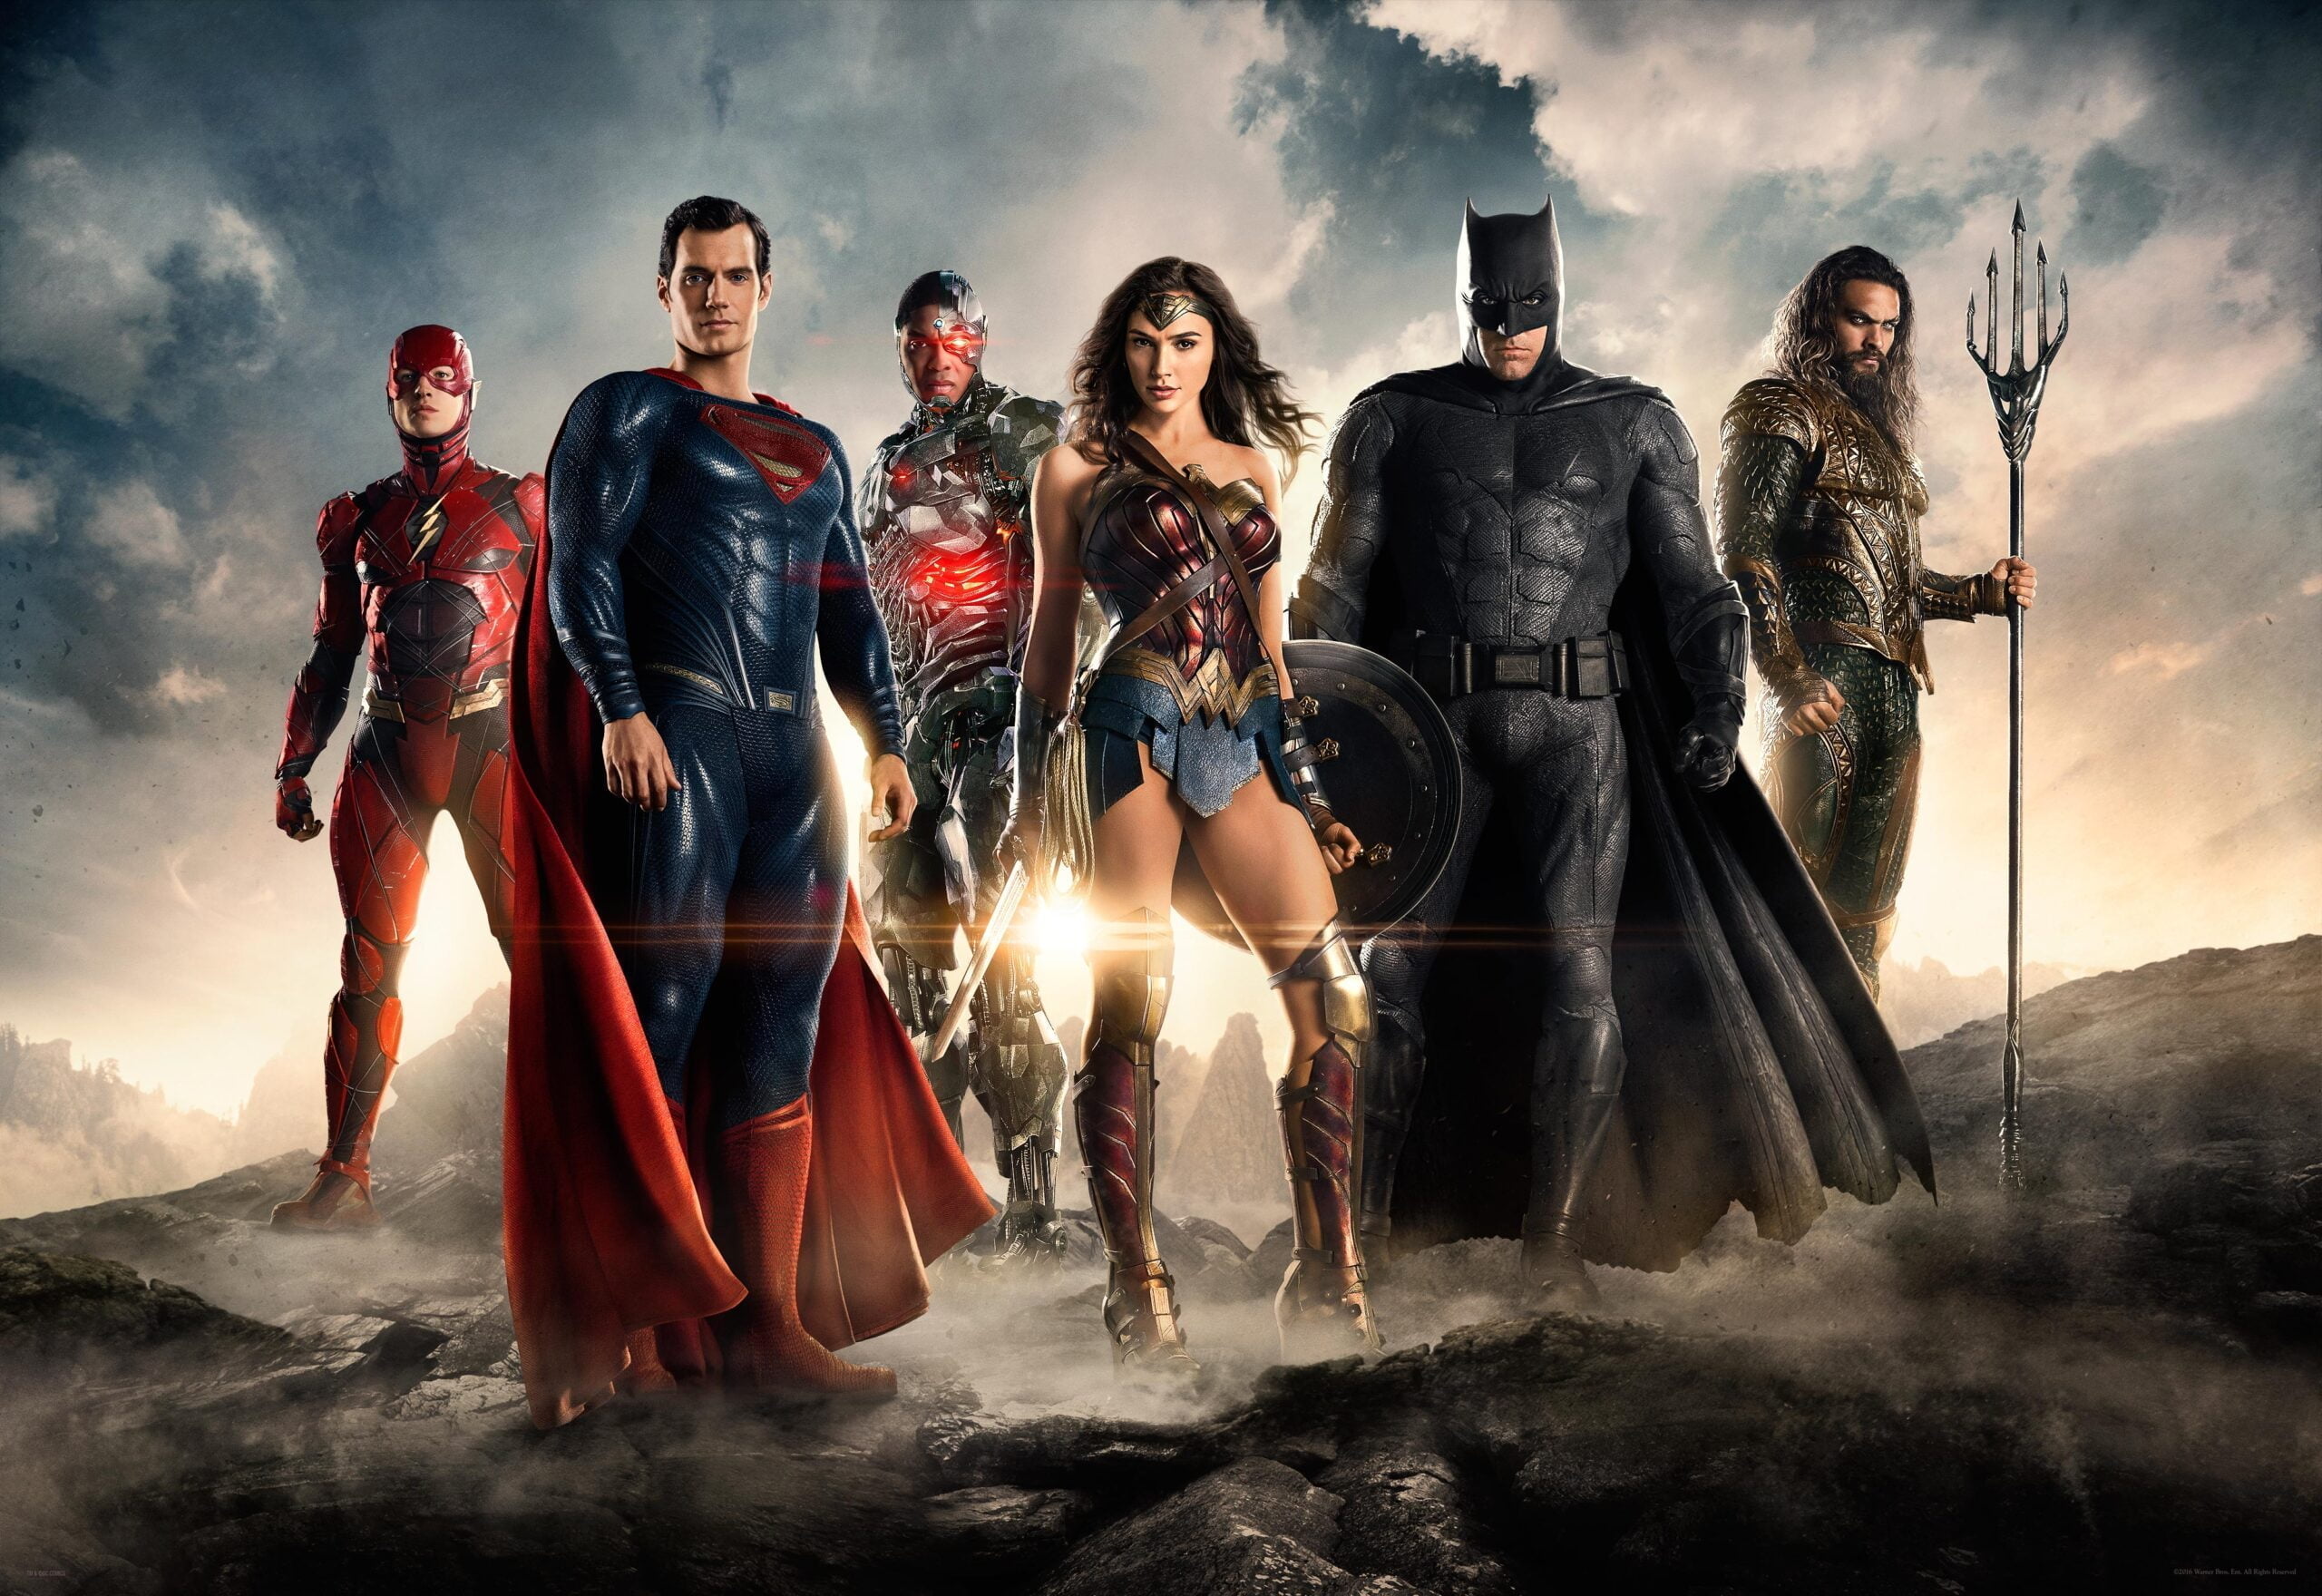 Zack Snyder revela algumas fotos do set de “Liga da Justiça”